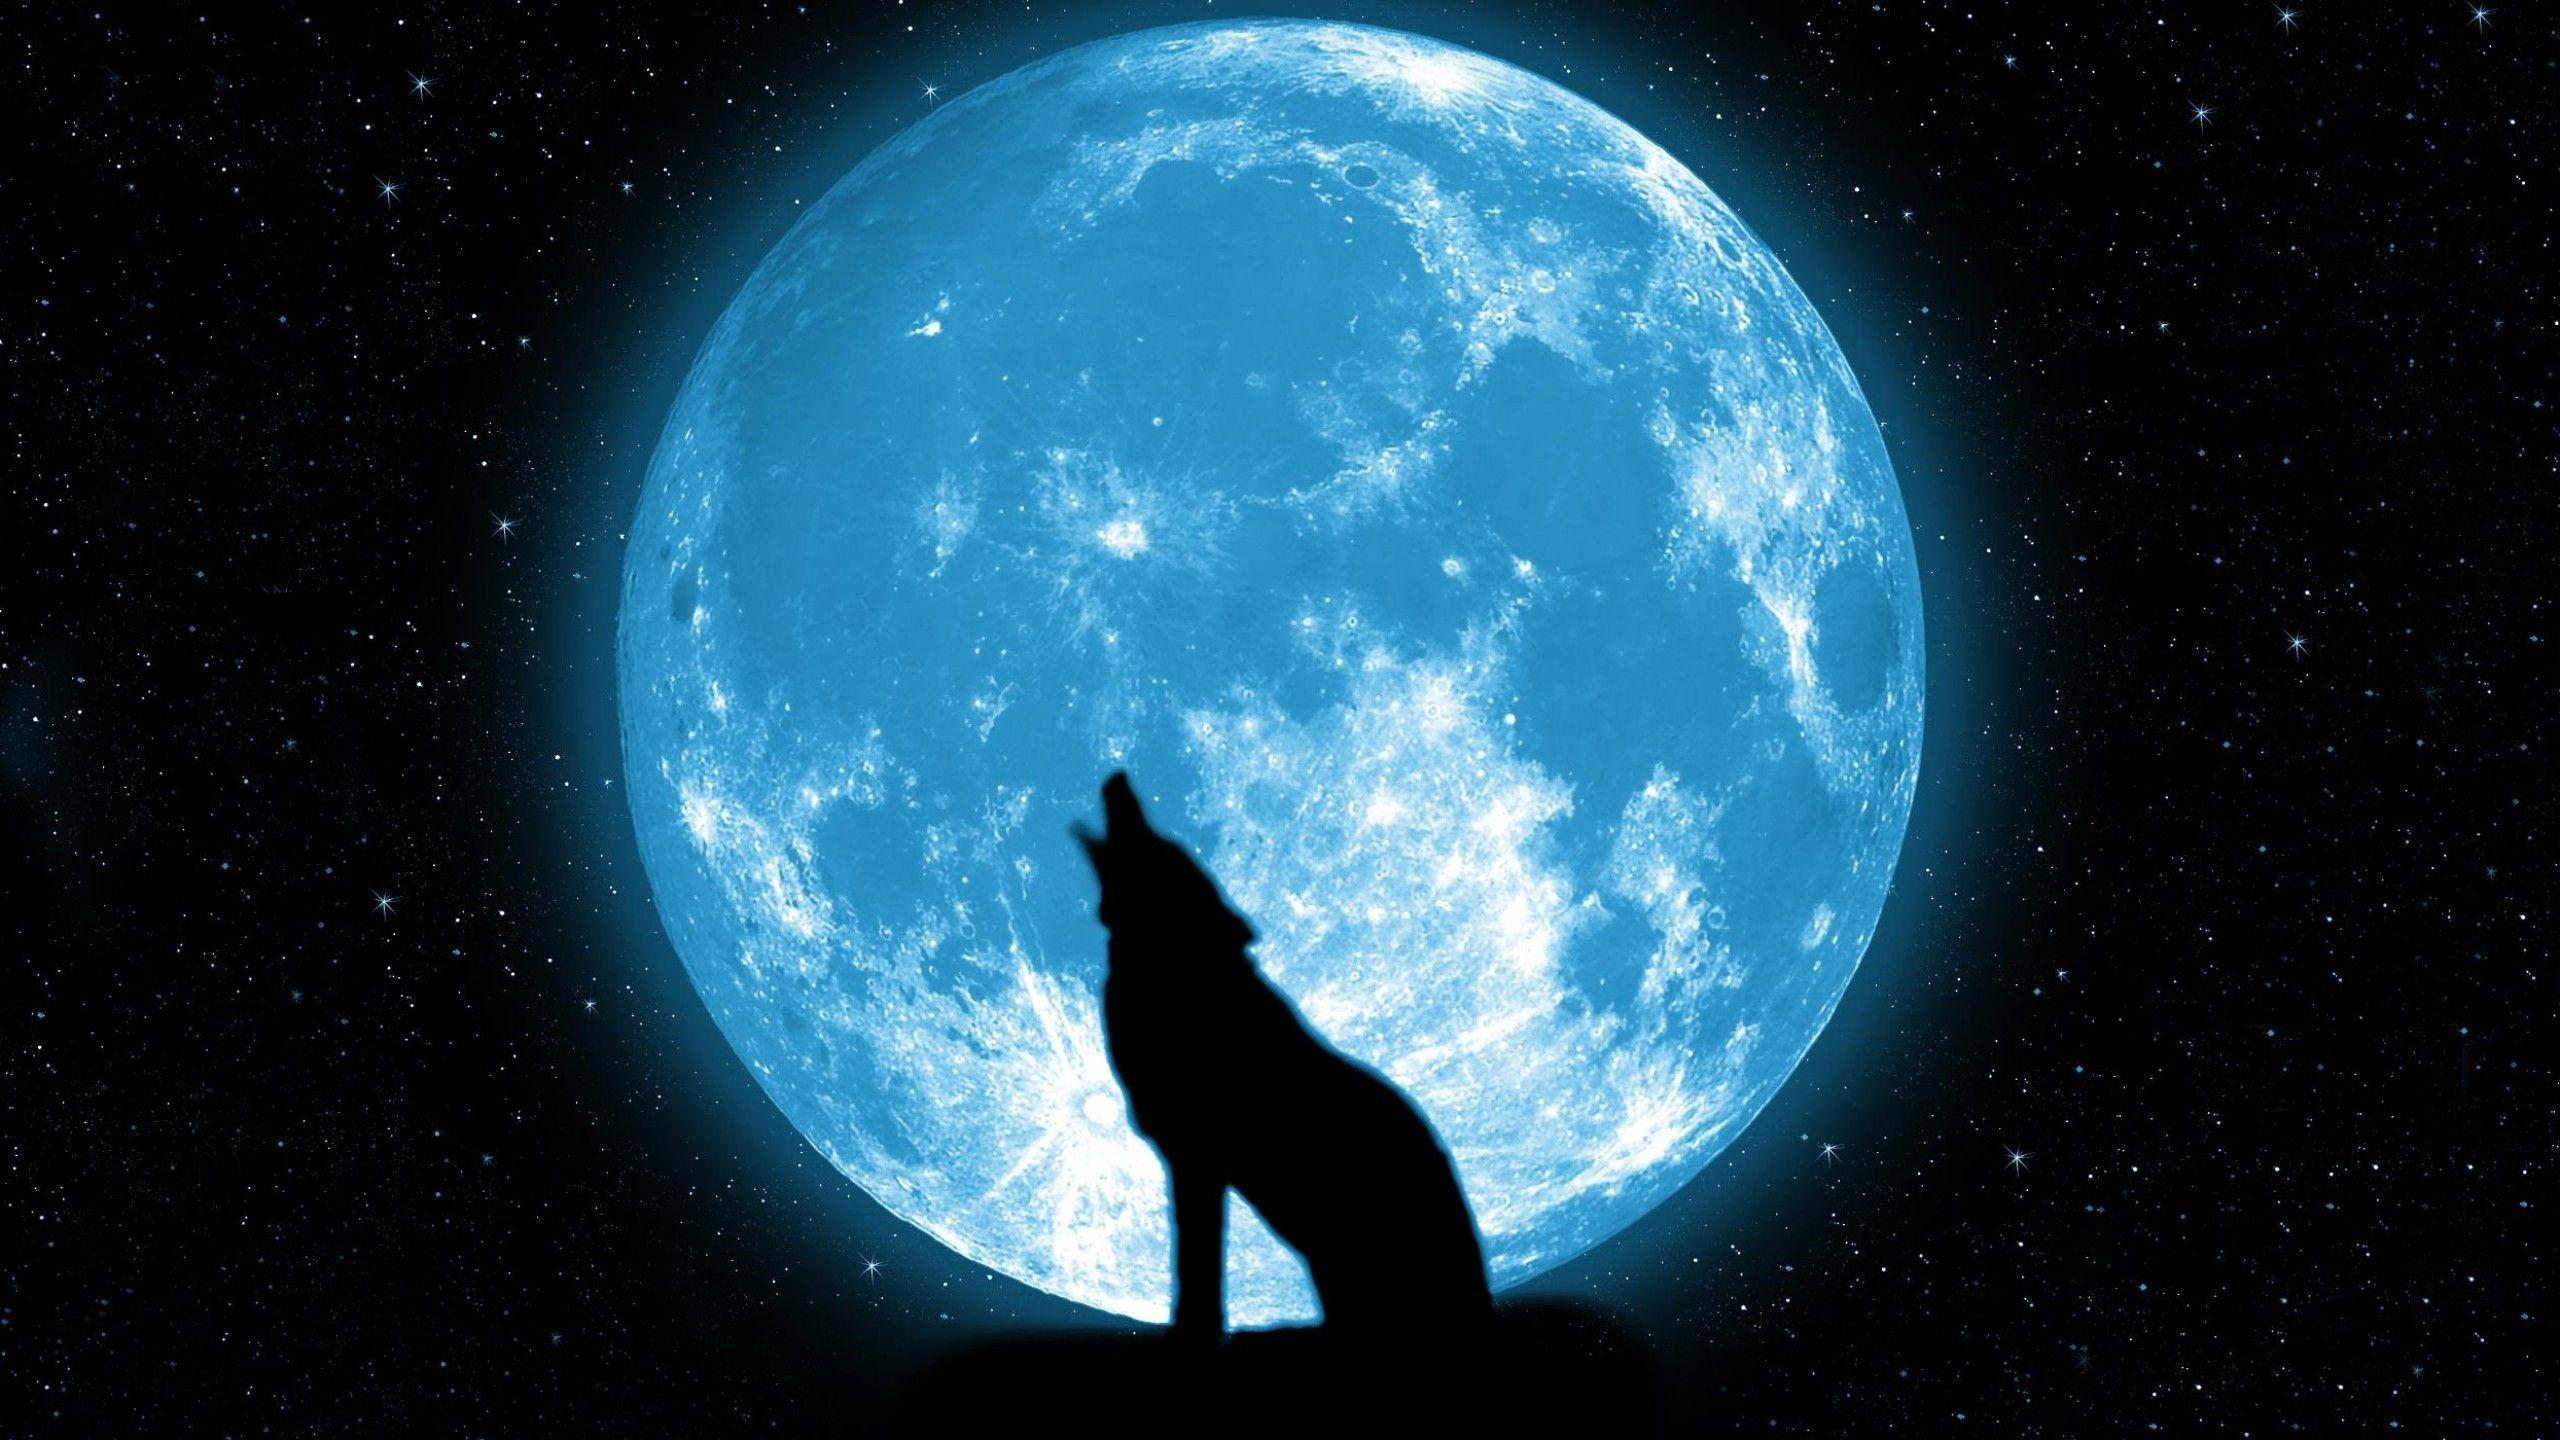 dark moonlight wolves